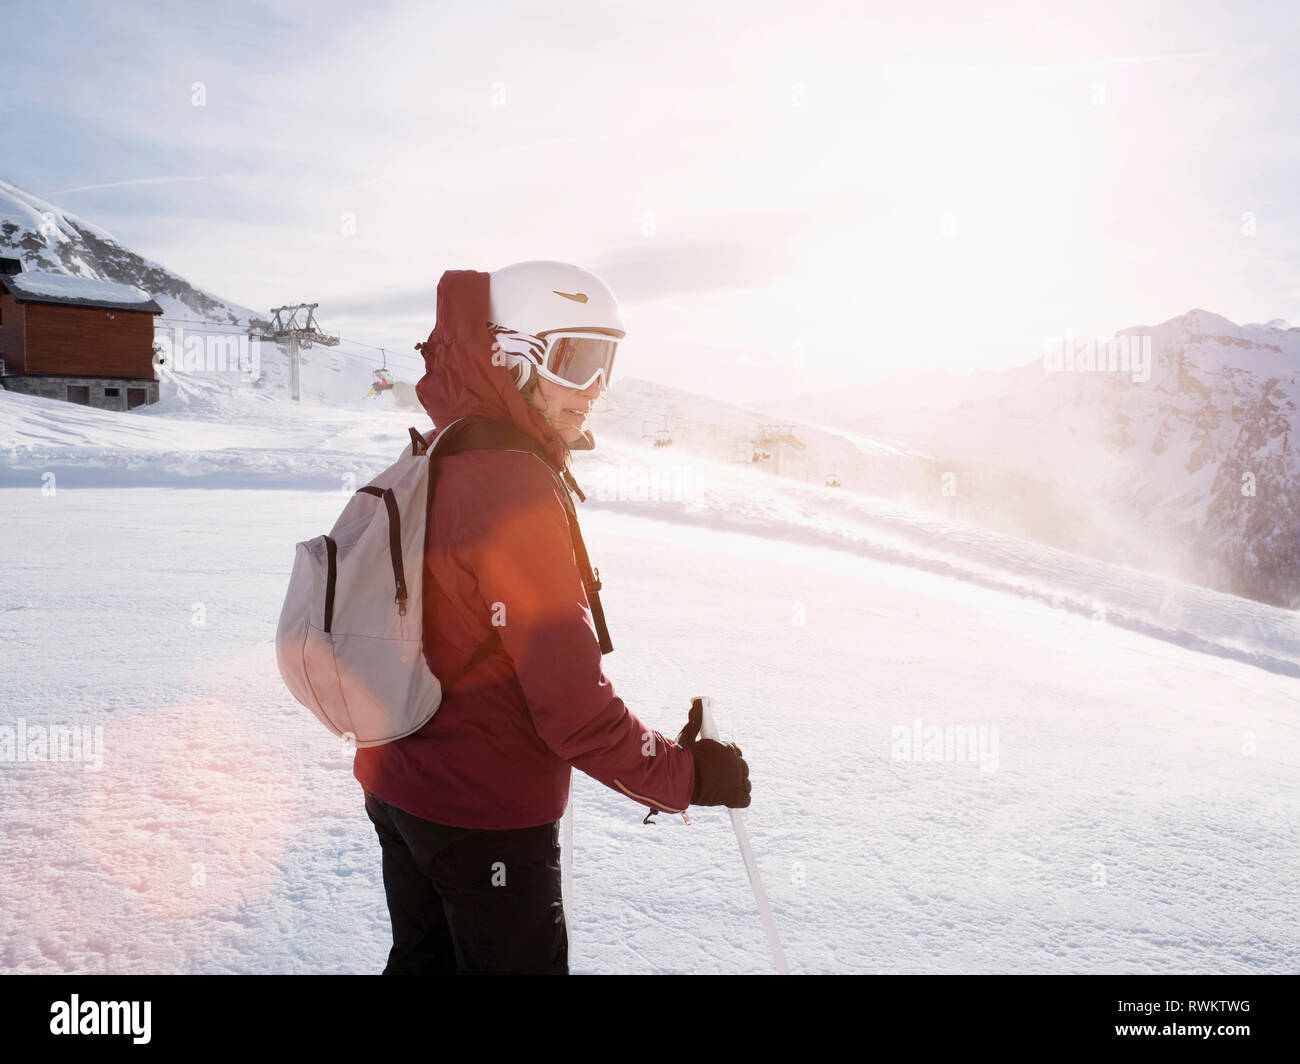 Junge Frau Skifahrer das Tragen von Helm und Skibrille in der schneebedeckten Landschaft, Alpe Ciamporino, Piemont, Italien Stockfoto